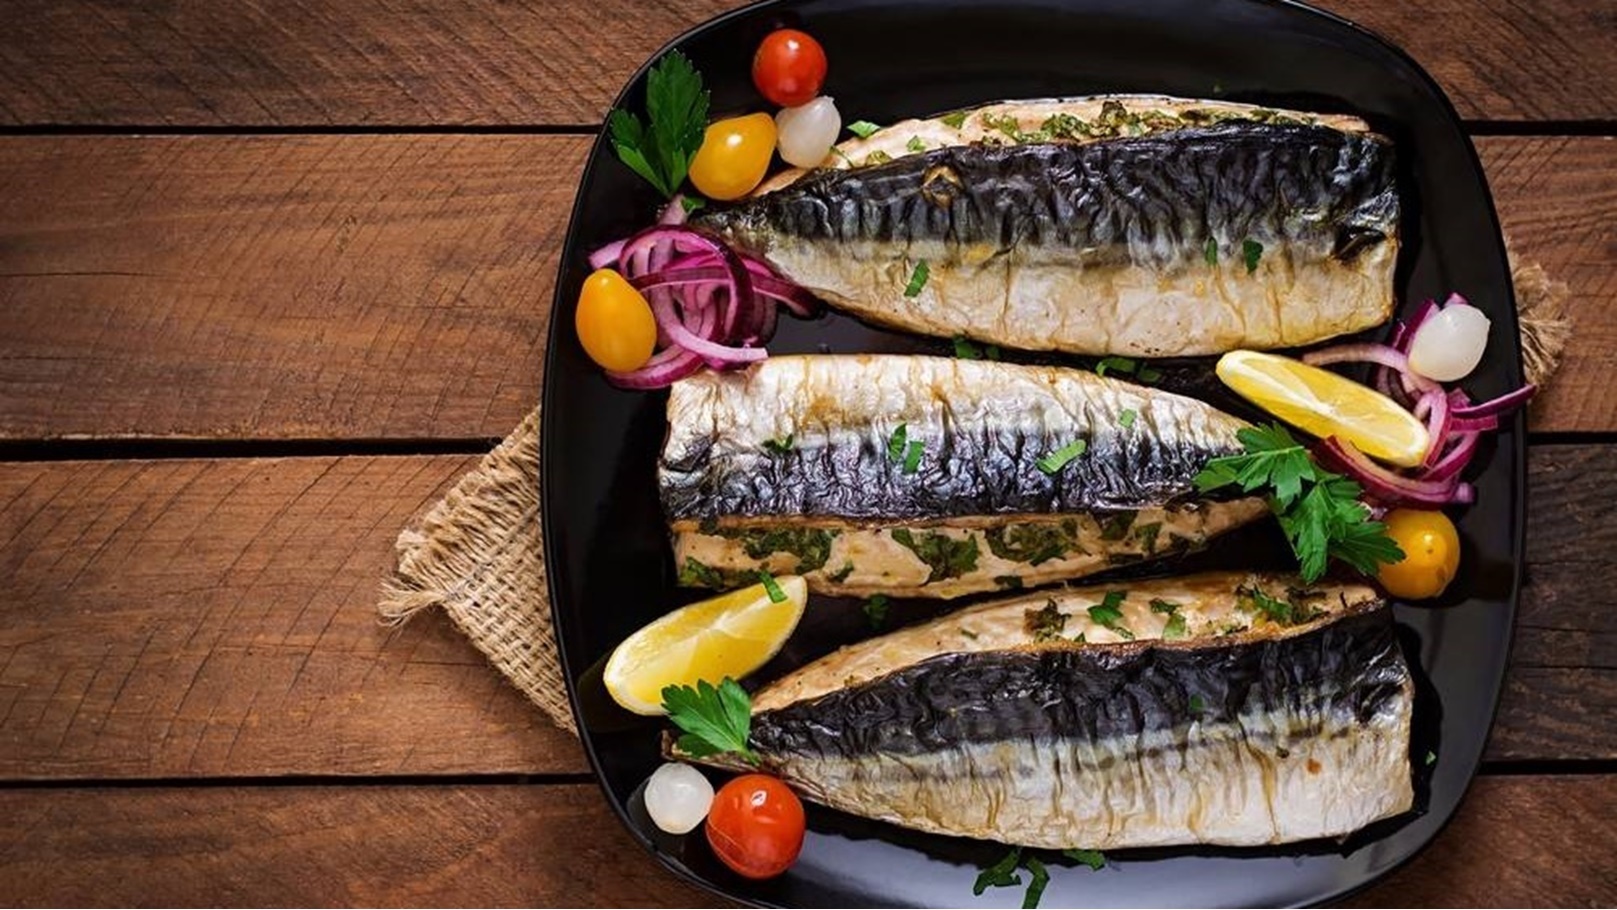 طريقة عمل السمك الماكريل بالكوسا والخضروات